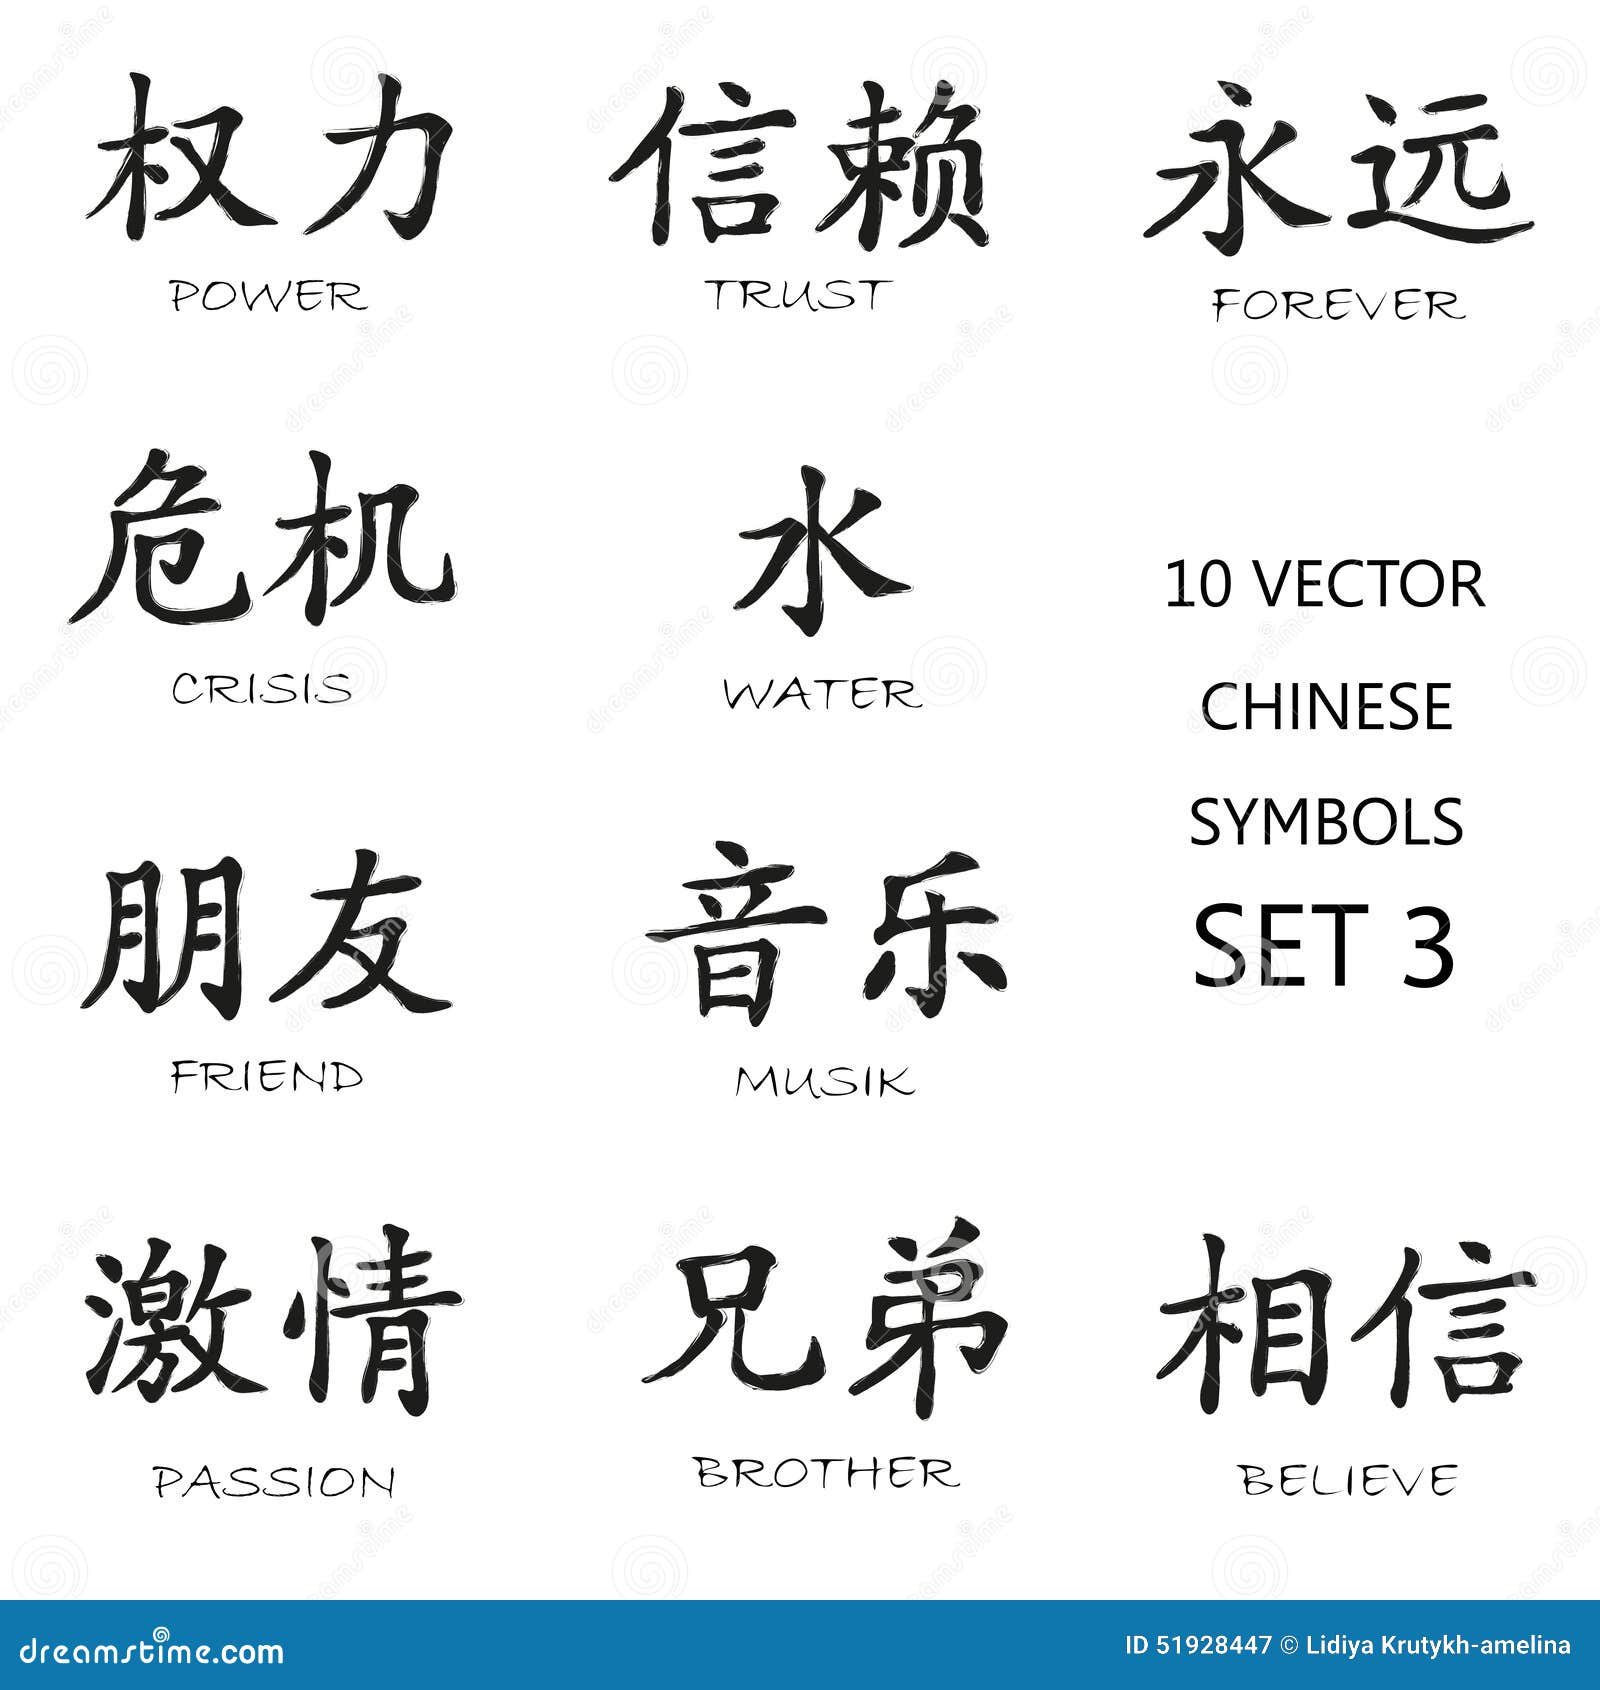 Значение китайских цветов. Китайские символы на заборе. Символы на китайских часах.